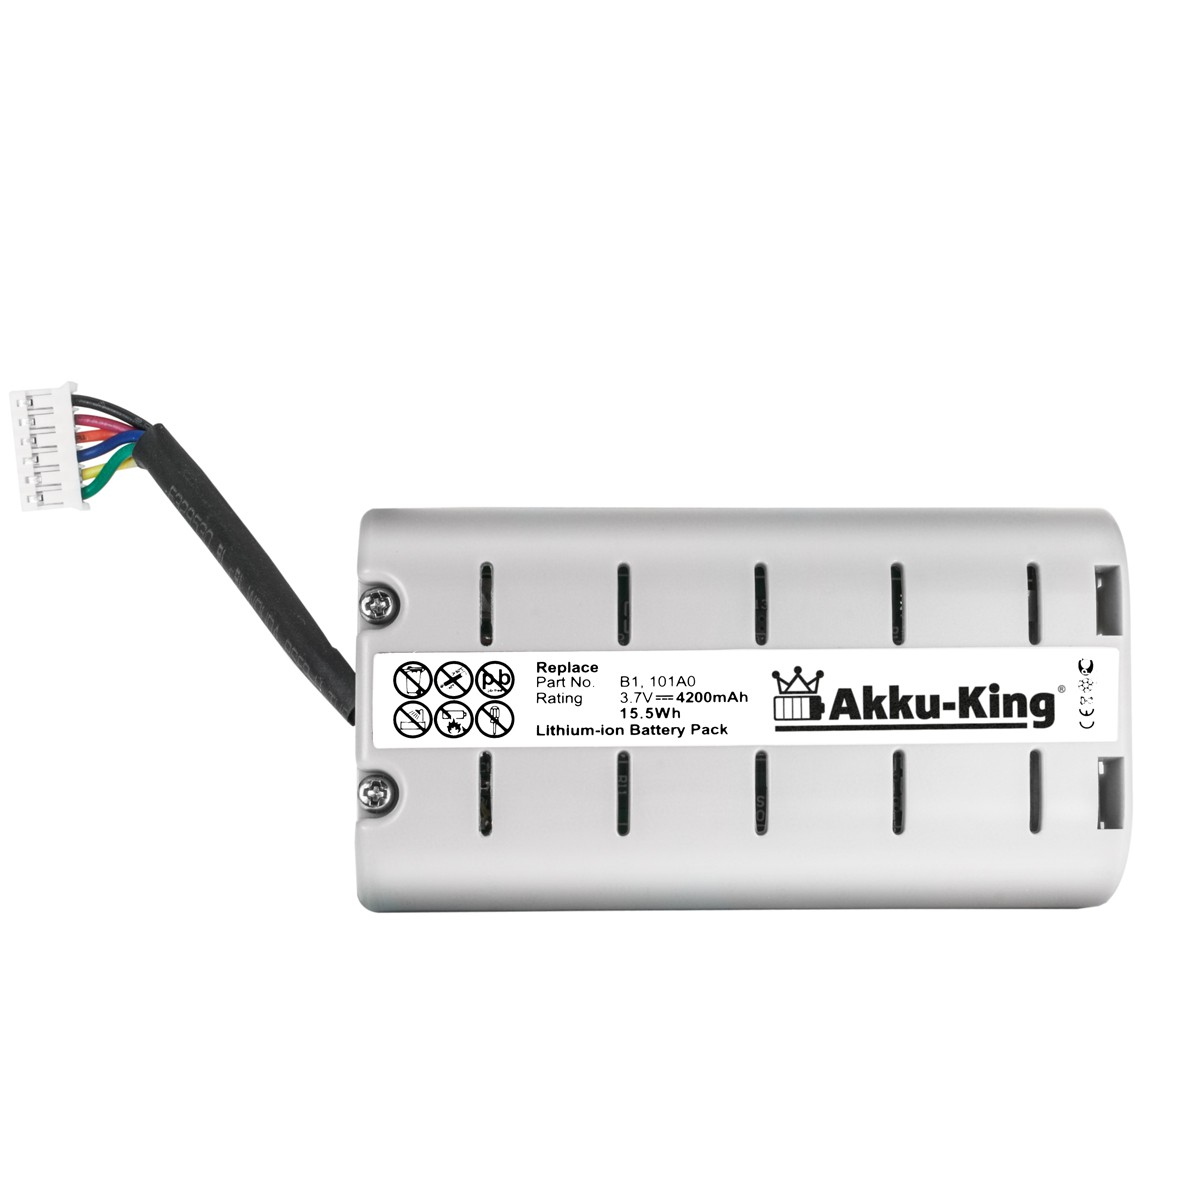 AKKU-KING Akku mit Geräte-Akku, ChargePAK kompatibel Volt, 4200mAh Li-Ion 3.7 Pure B1